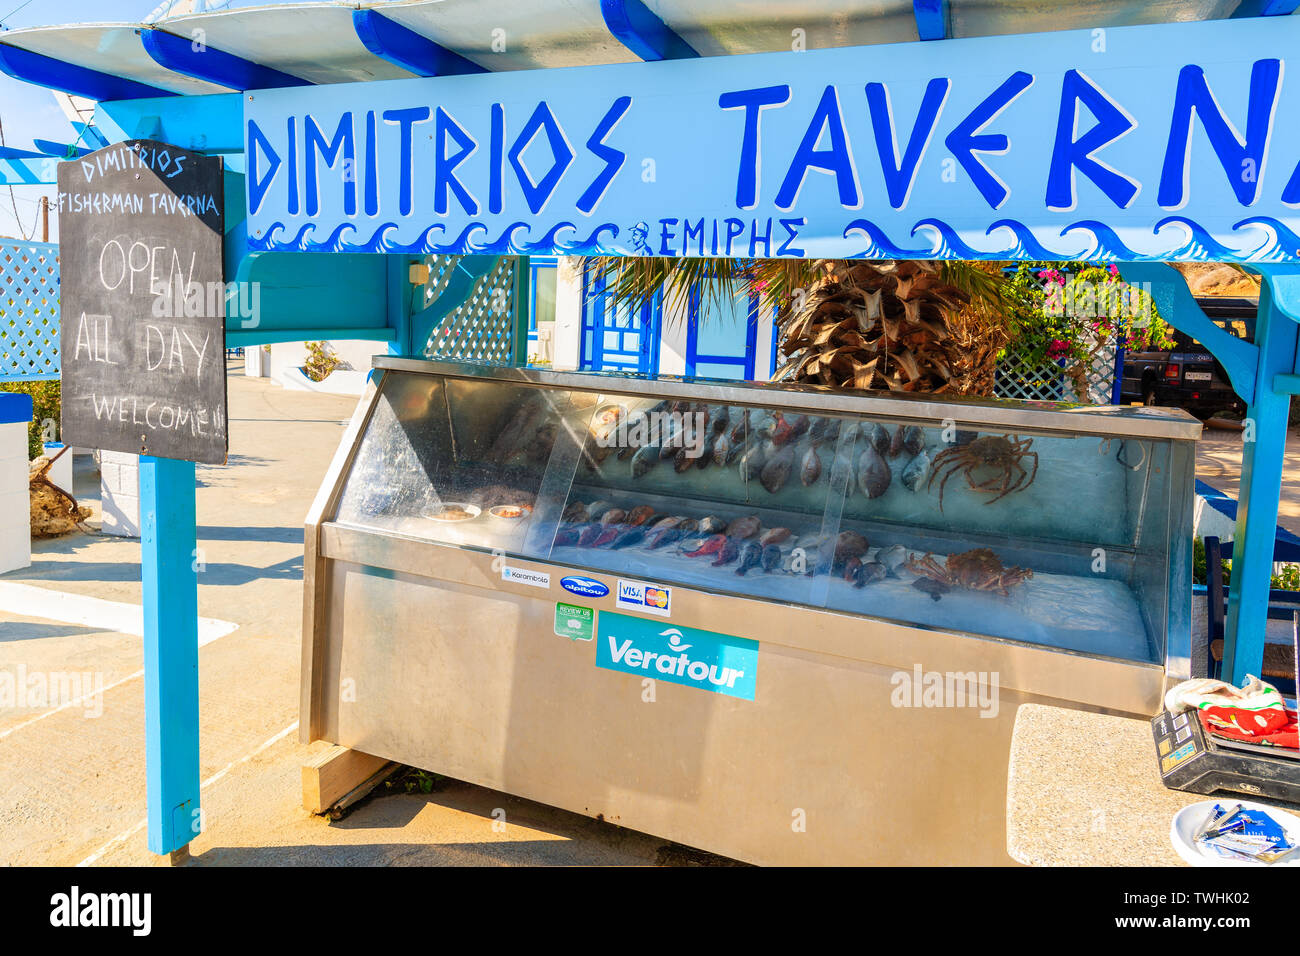 FINIKI PORTA, KARPATHOS ISLAND - Set 25, 2018: Stand presentando pesce fresco per mangiare nel ristorante taverna nel villaggio sulla costa di Karpathos Island, Grecia Foto Stock